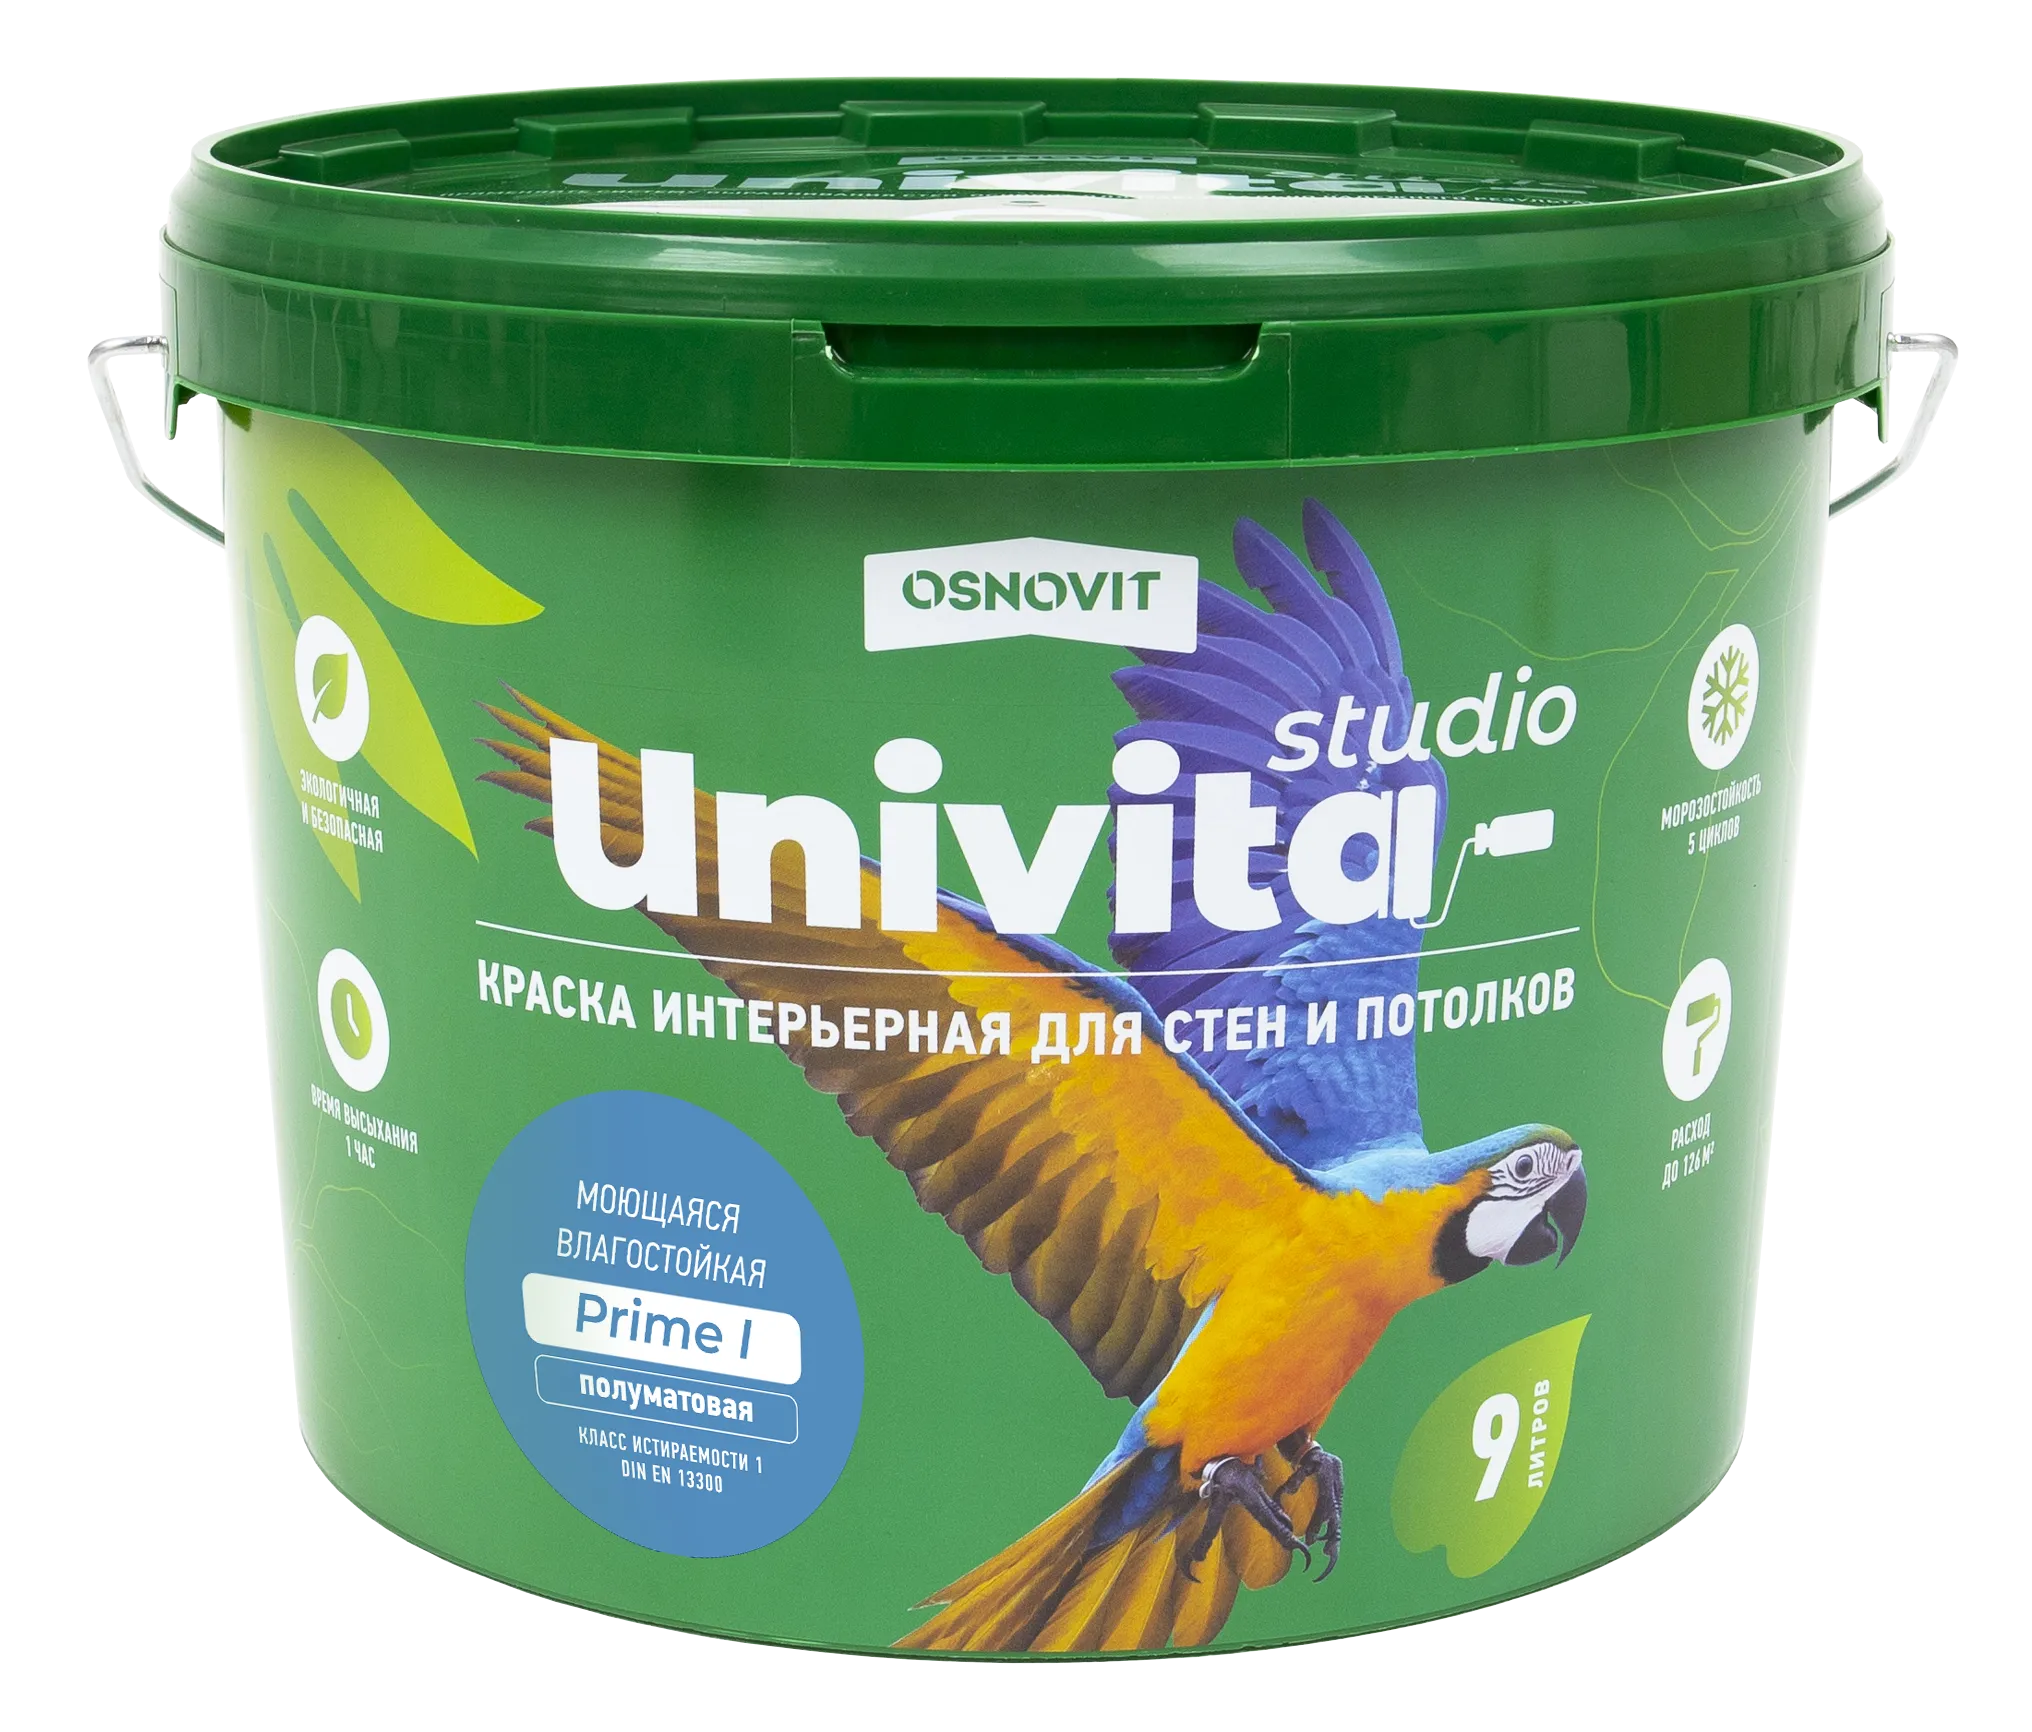 Интерьерная краска полуматовая моющаяся для стен и потолков ОСНОВИТ UNIVITA STUDIO Prime I (База С) 2,7 л 